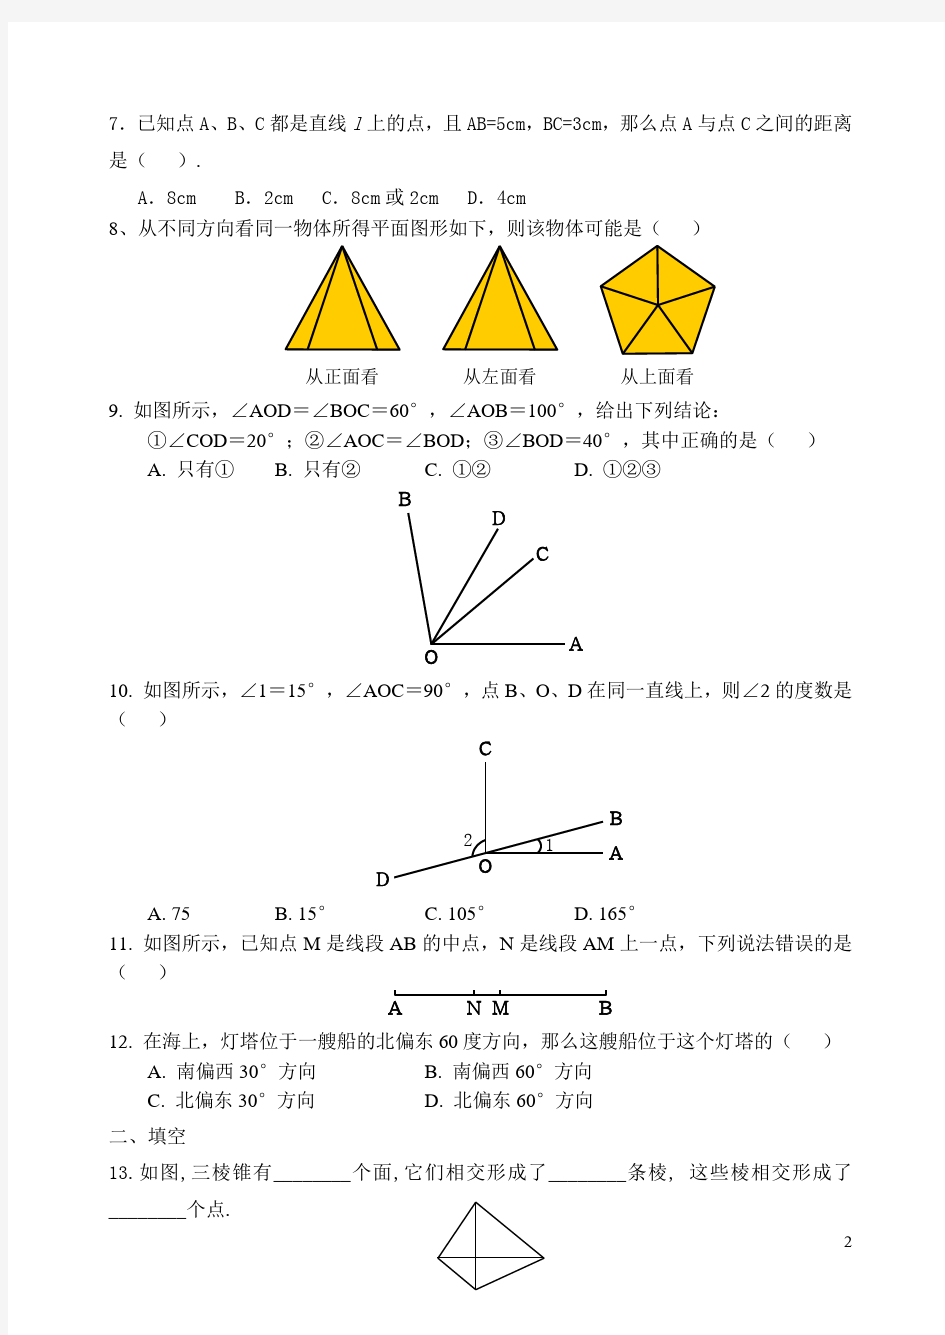 (完整版)七年级数学上册几何图形典型练习题